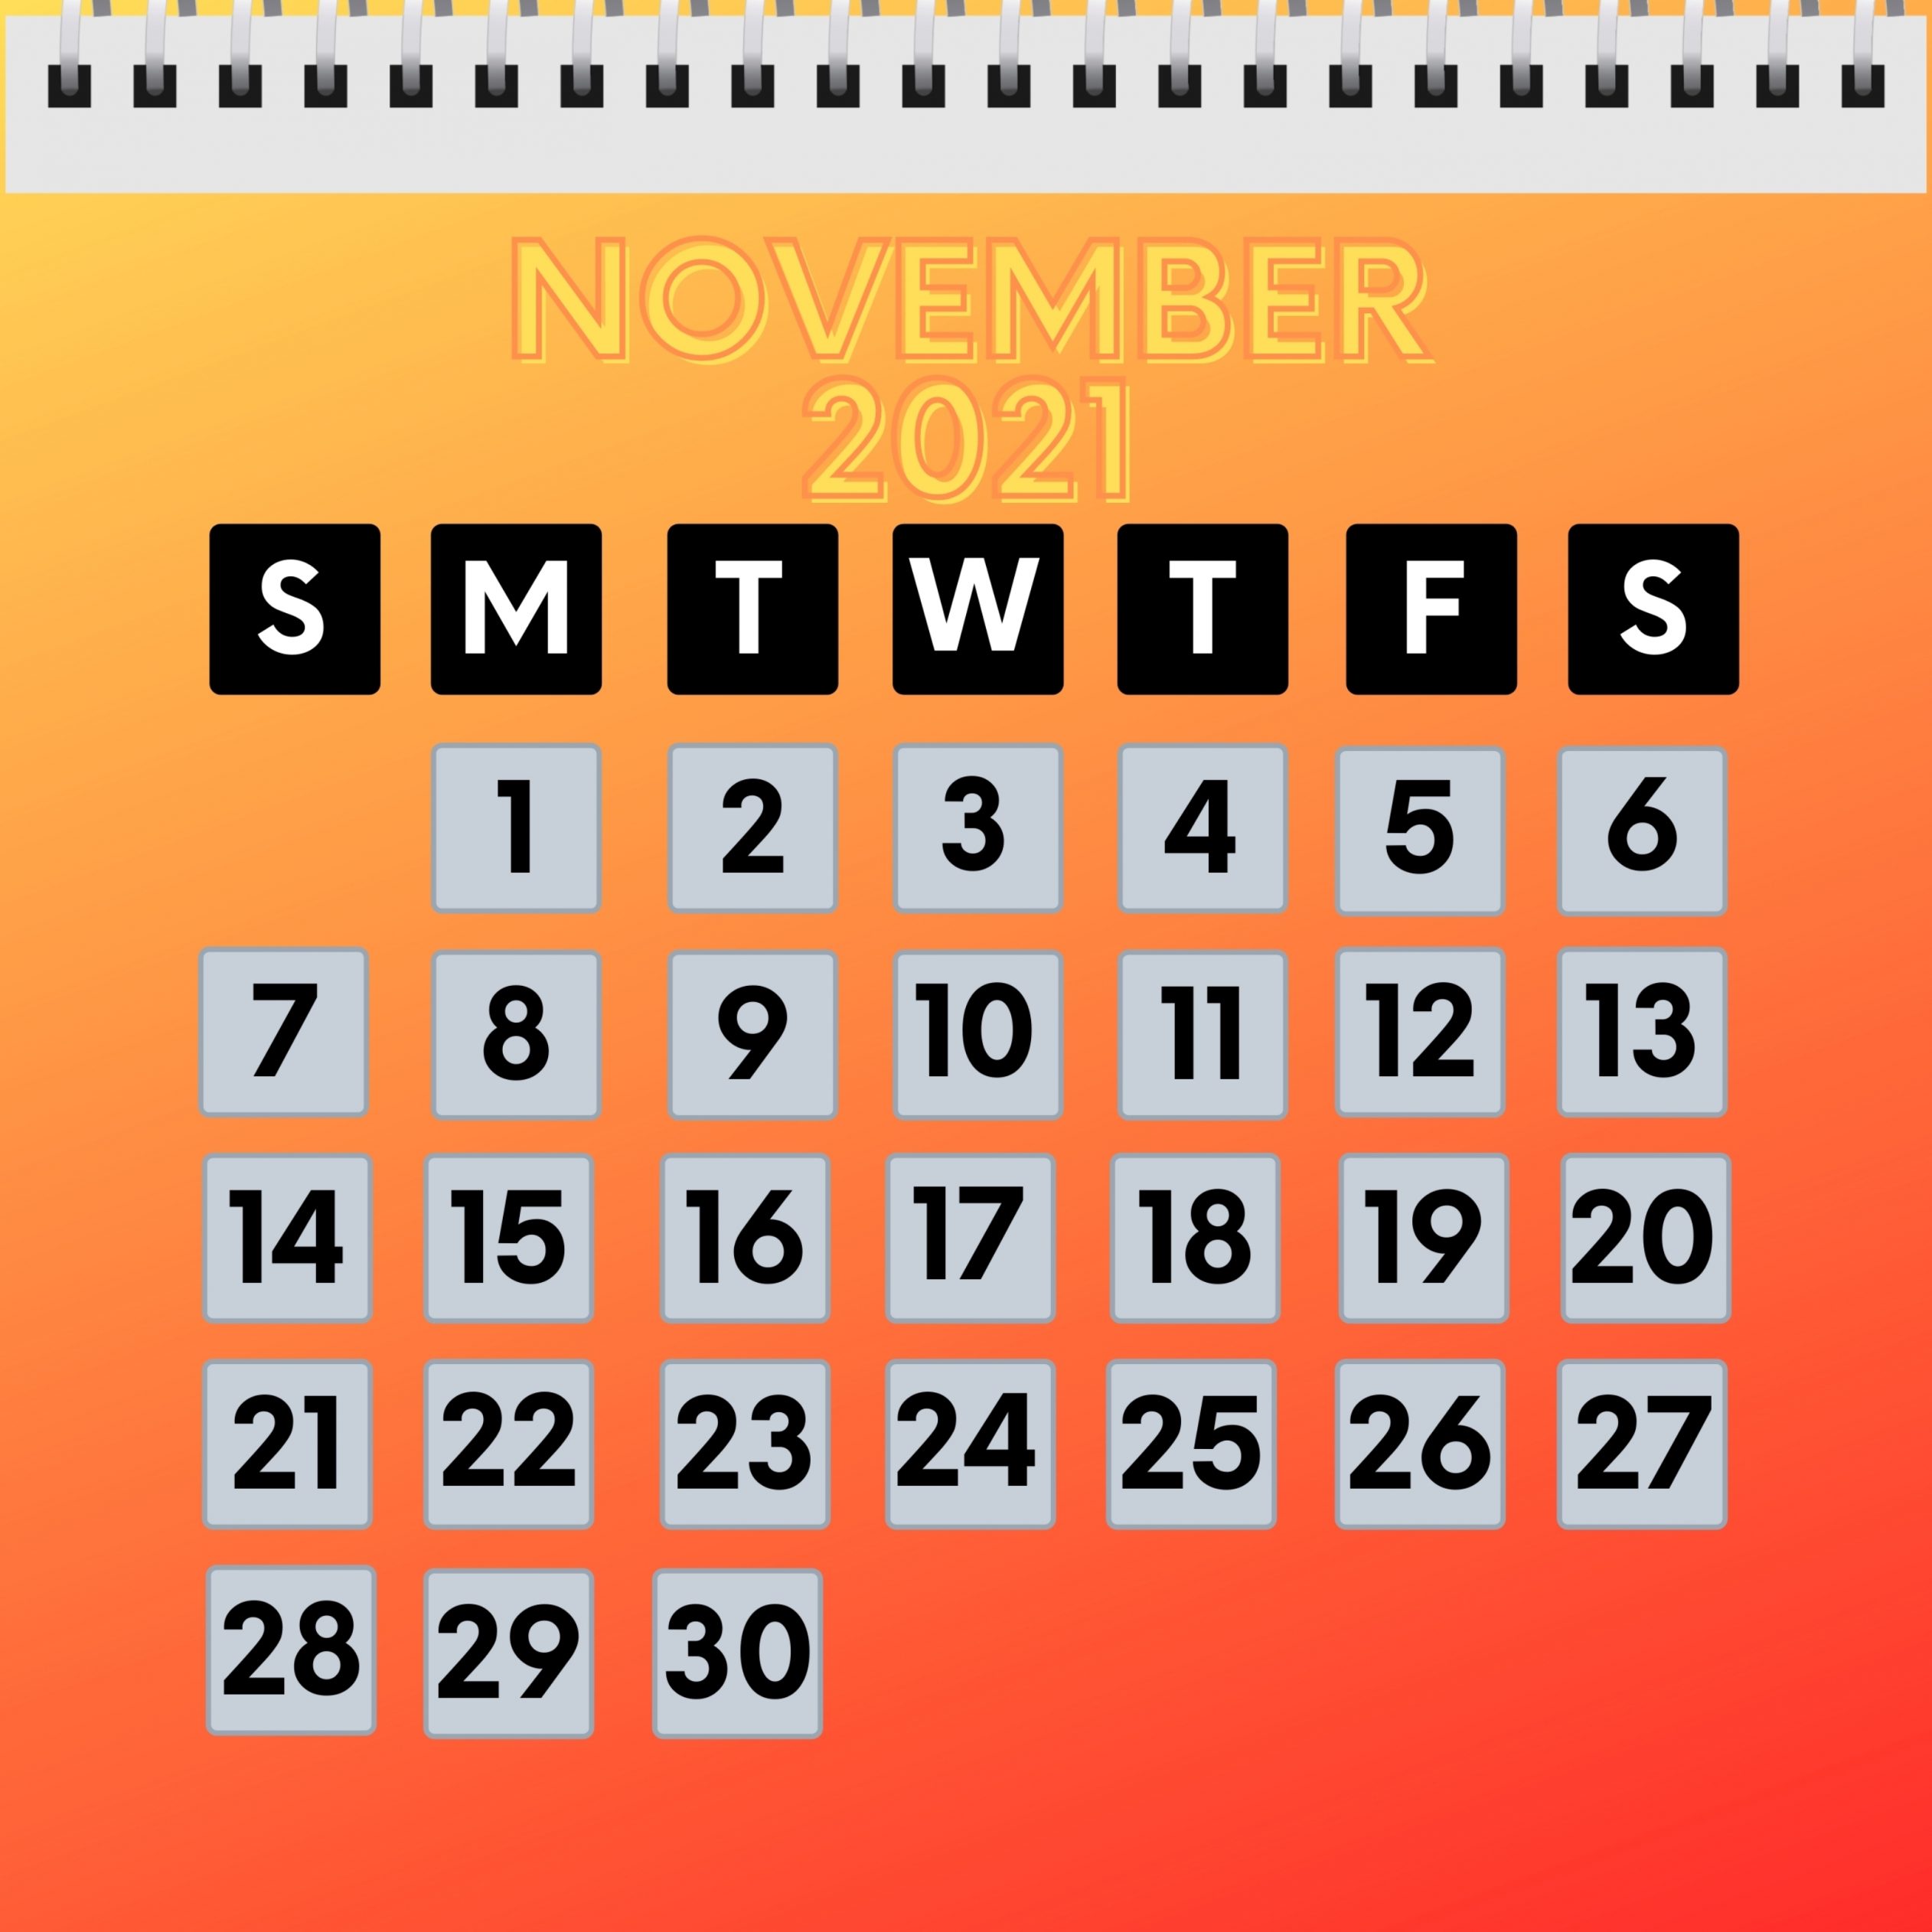 2524x2524 Parallax wallpaper 4k November 2021 Calendar iPad Wallpaper 2524x2524 pixels resolution